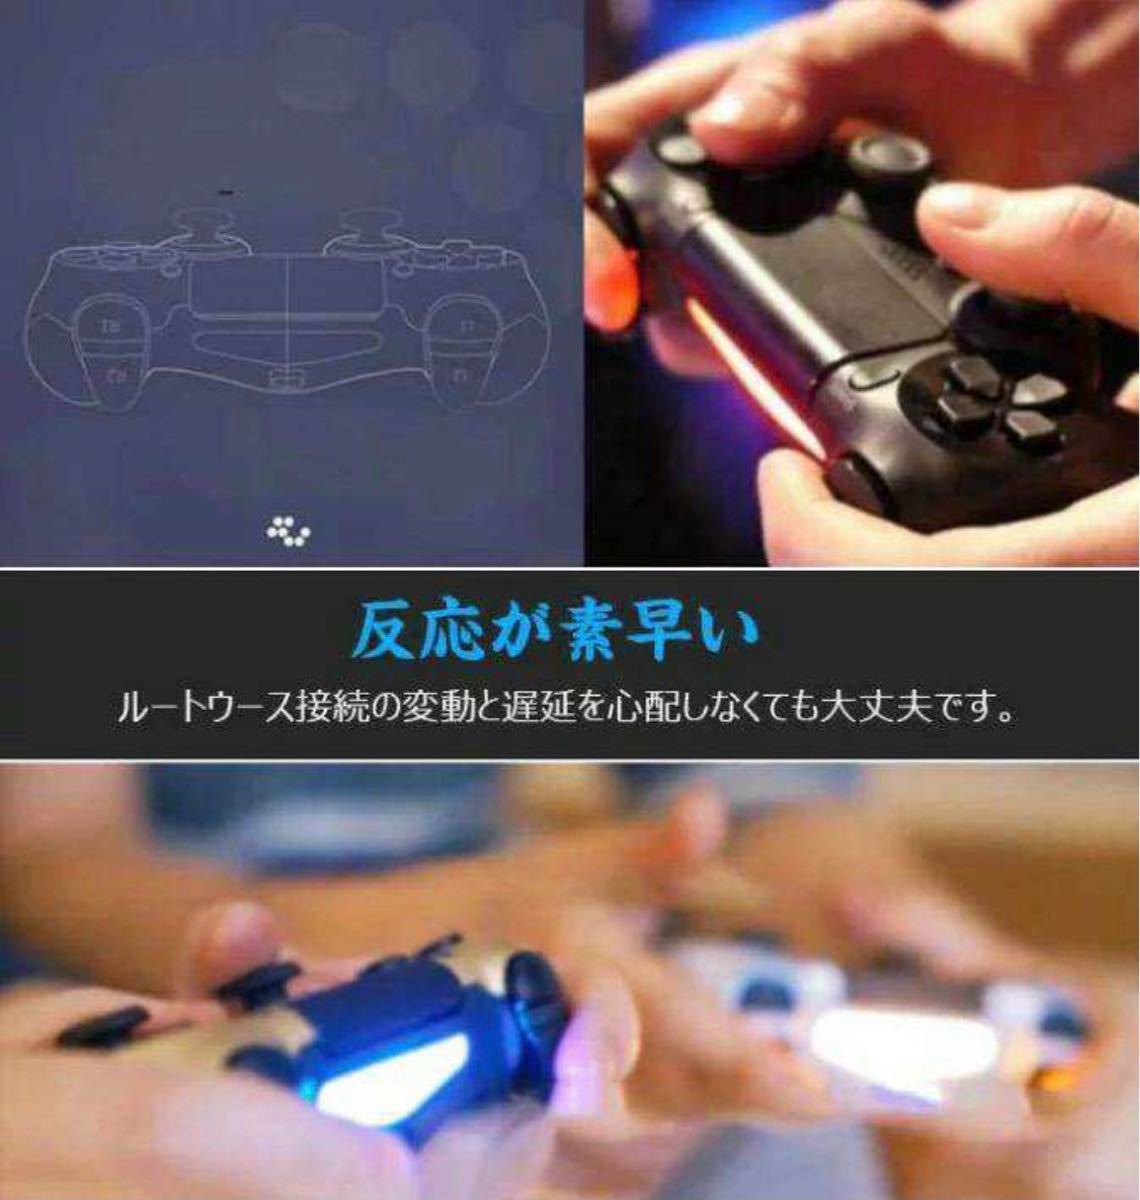 PS4 ワイヤレスコントローラー 互換品 DUALSHOCK4 迷彩